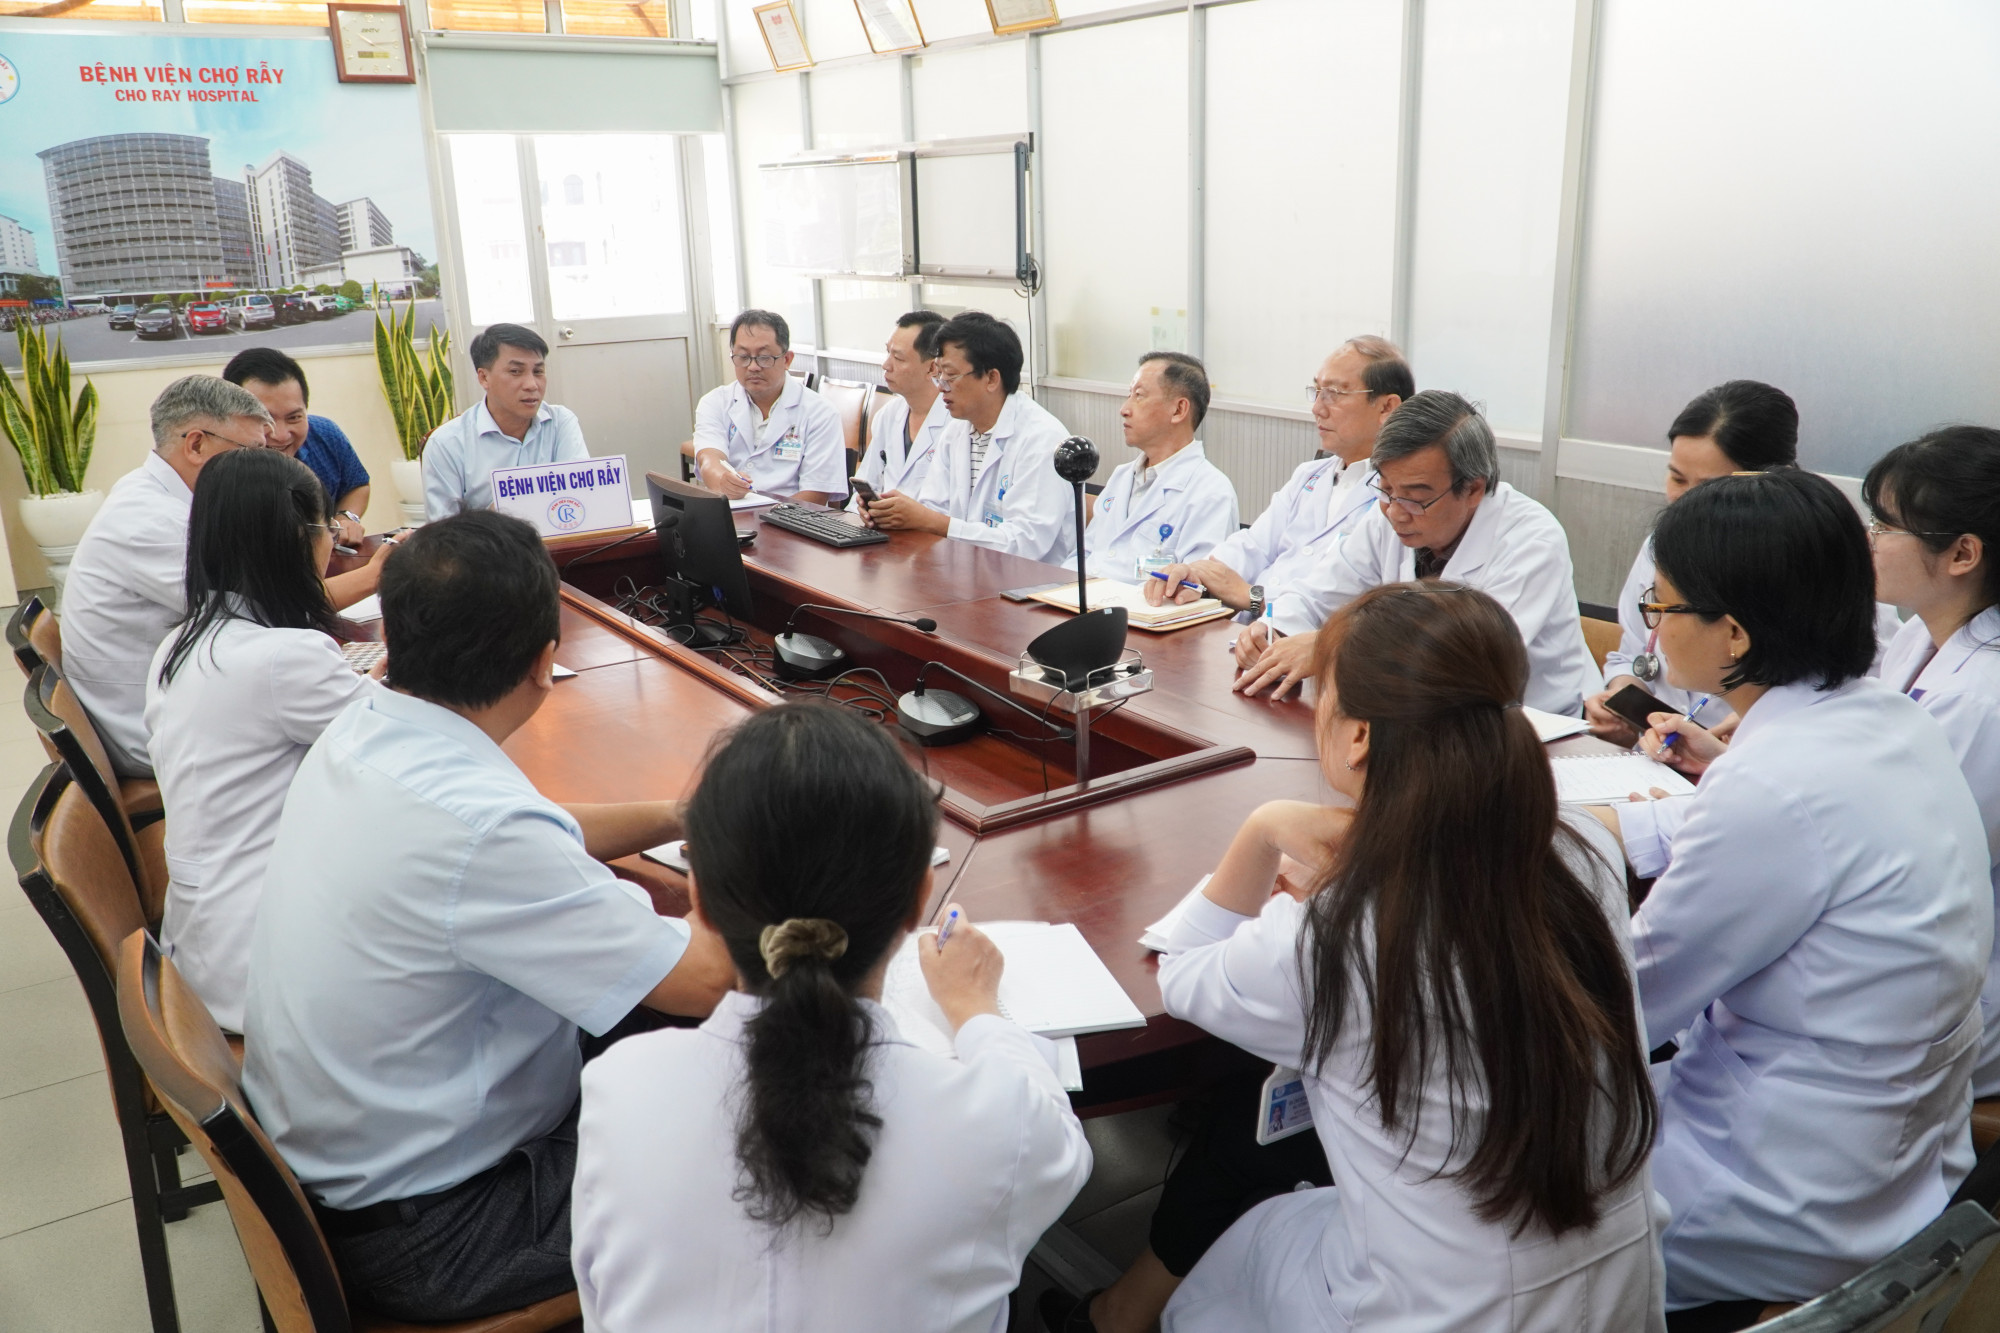 Các bác sĩ của Bệnh viện Chợ Rẫy đang họp để triển khai kế hoạch hỗ trợ thí sinh, phụ huynh, ảnh BVCC